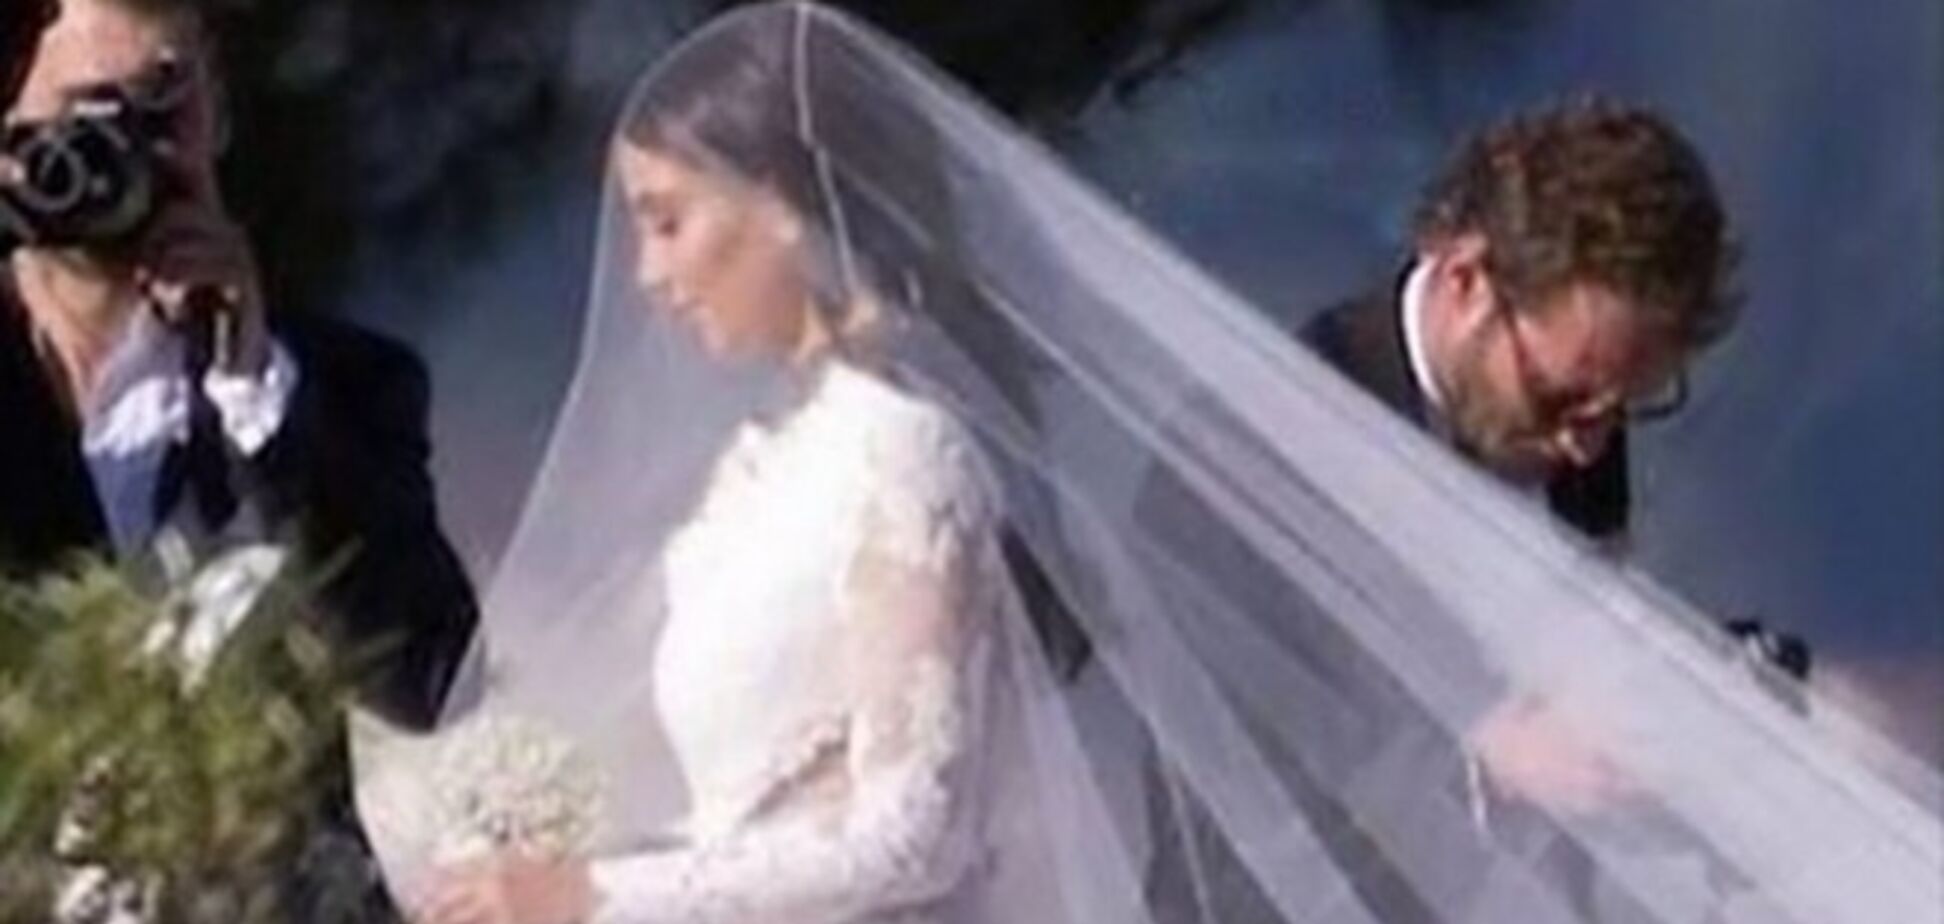 Роскошная свадьба во Флоренции Ким Кардашьян и Канье Уэста 